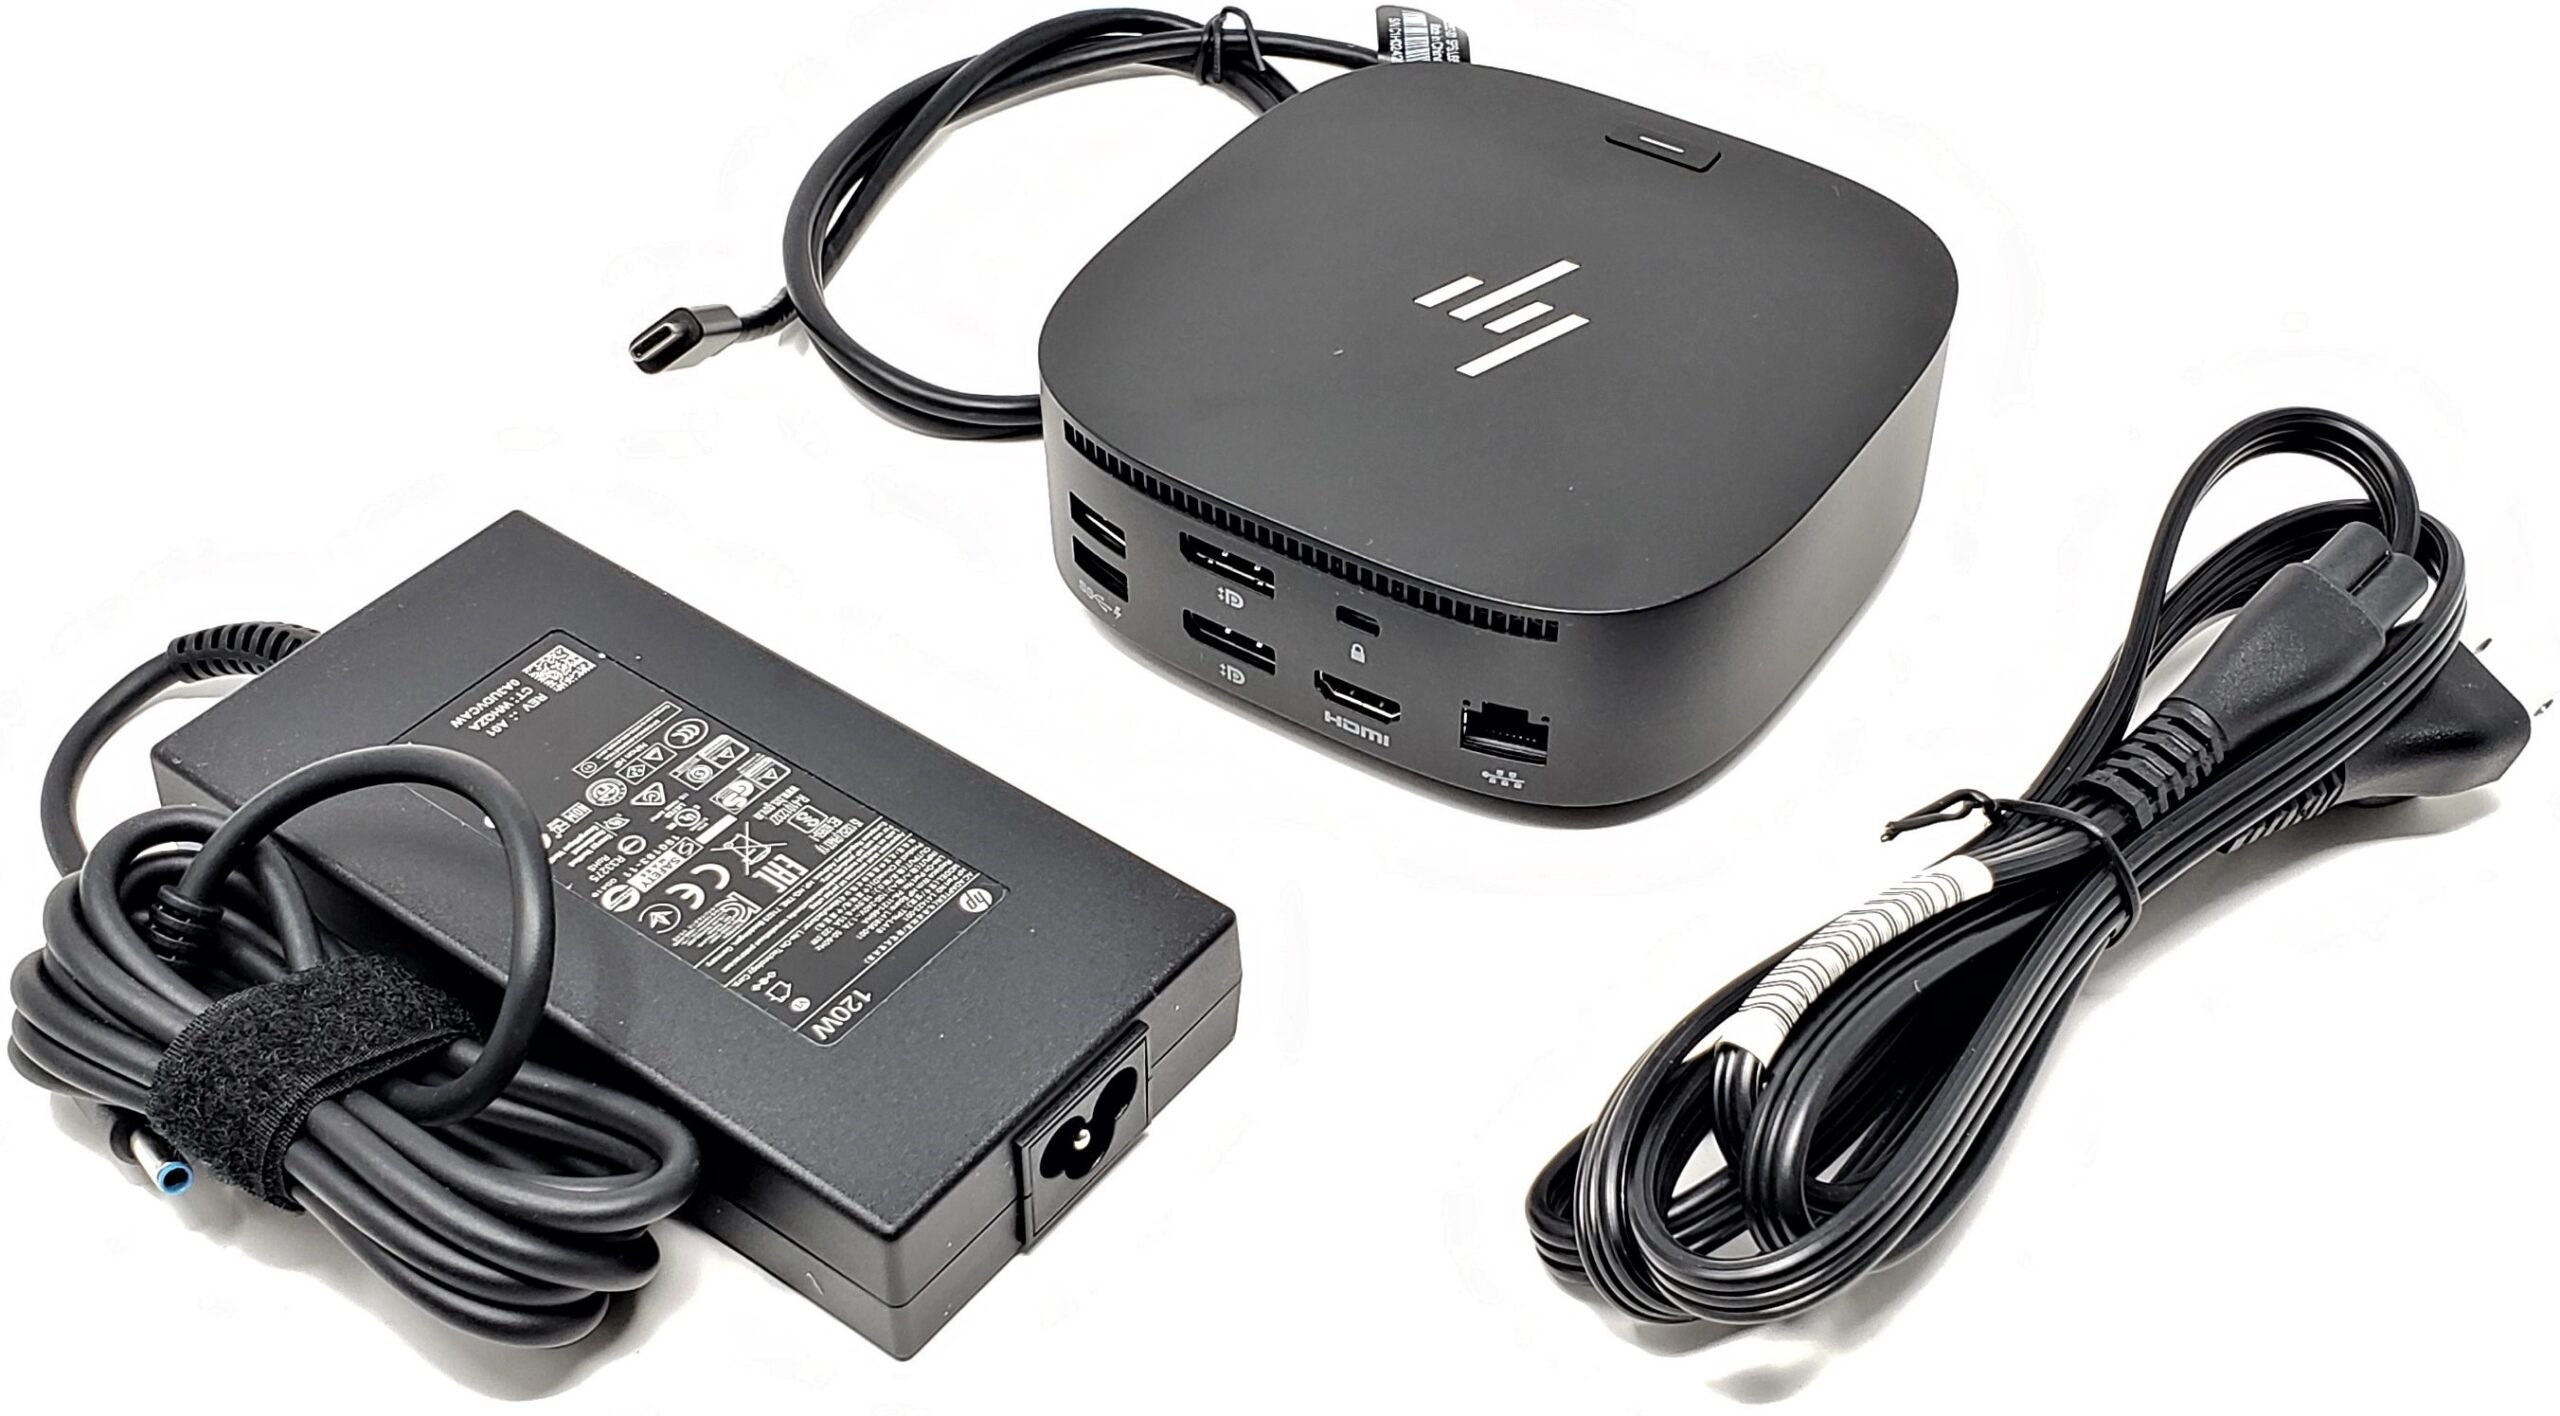 HP USB-C Dock G5, Model Number: 5TW10UT#ABA, for Notebook